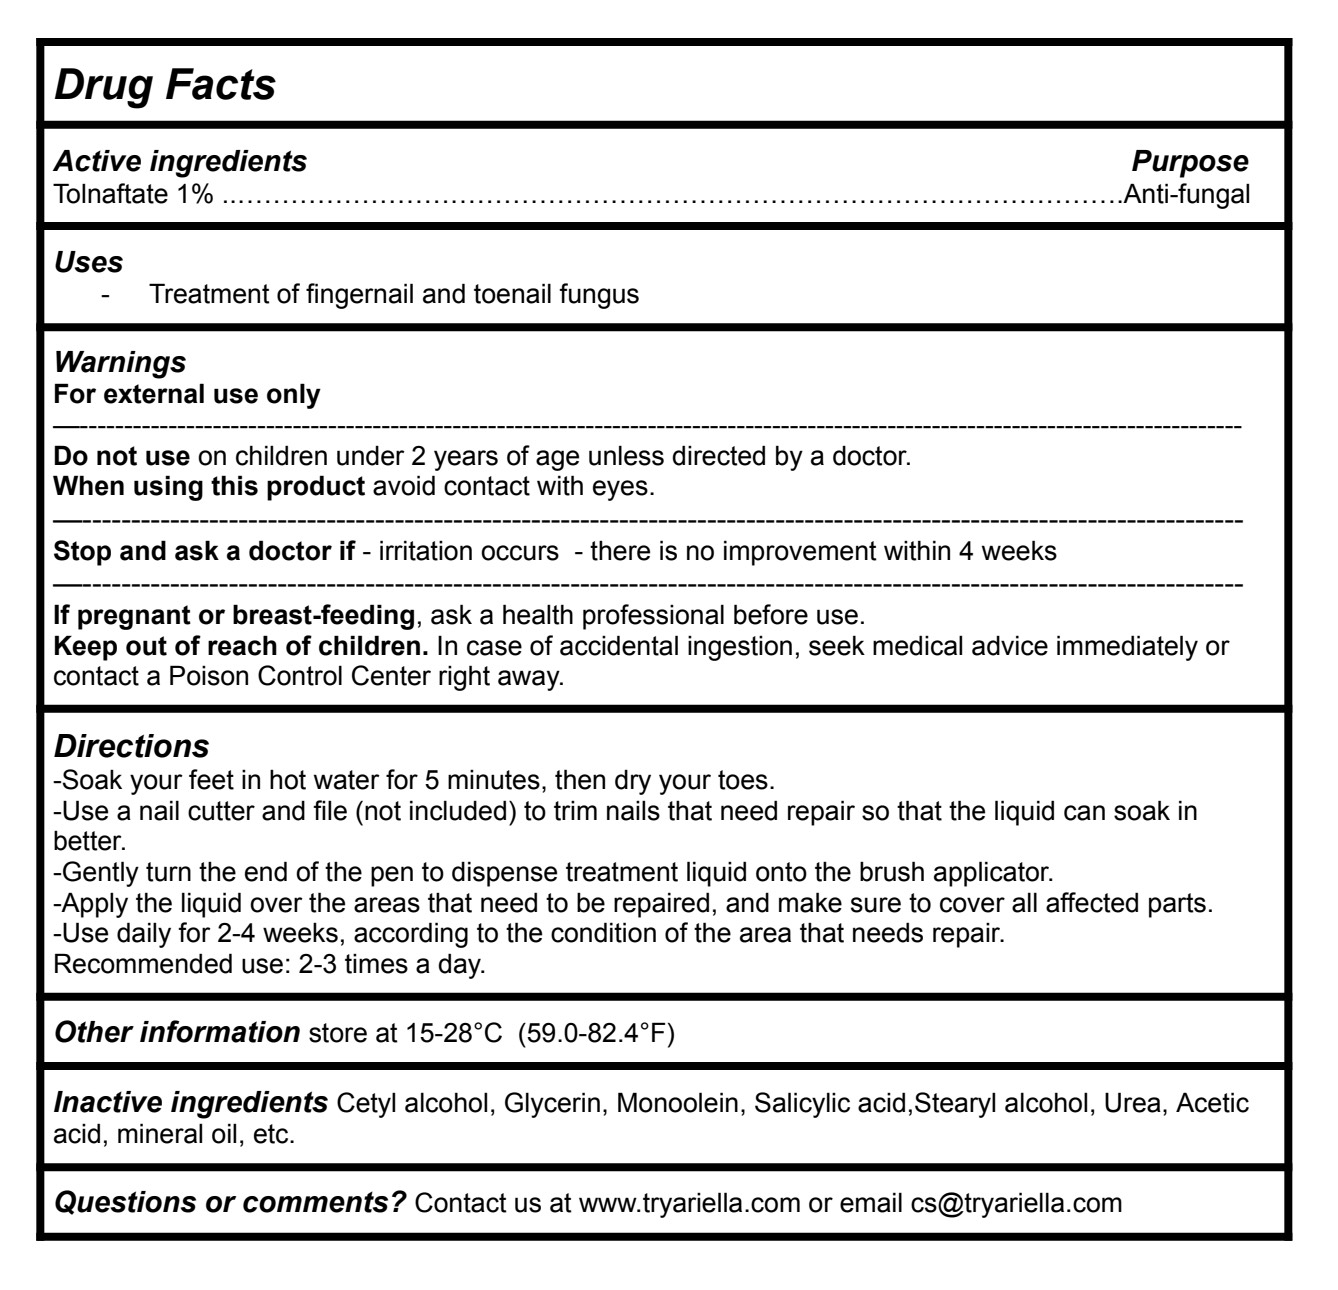 Drug Facts